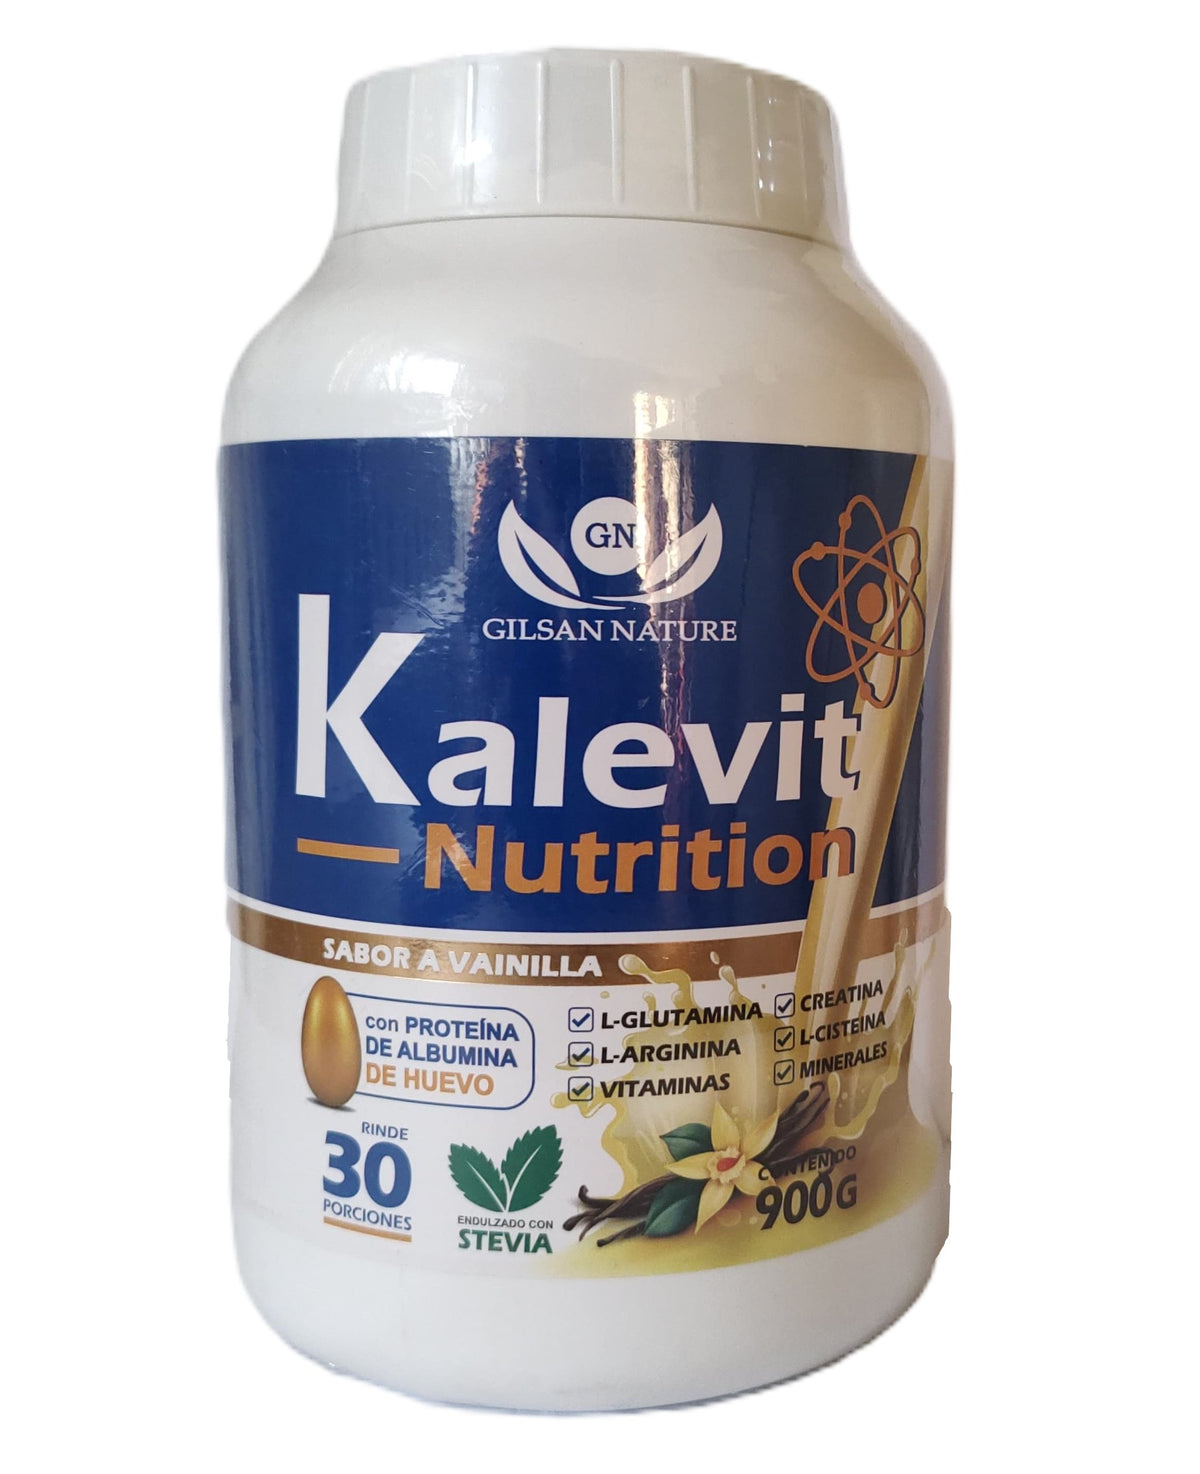 KALEVIT NUTRITION 900GRS. -  Ayuda al desarrollo y crecimiento muscular